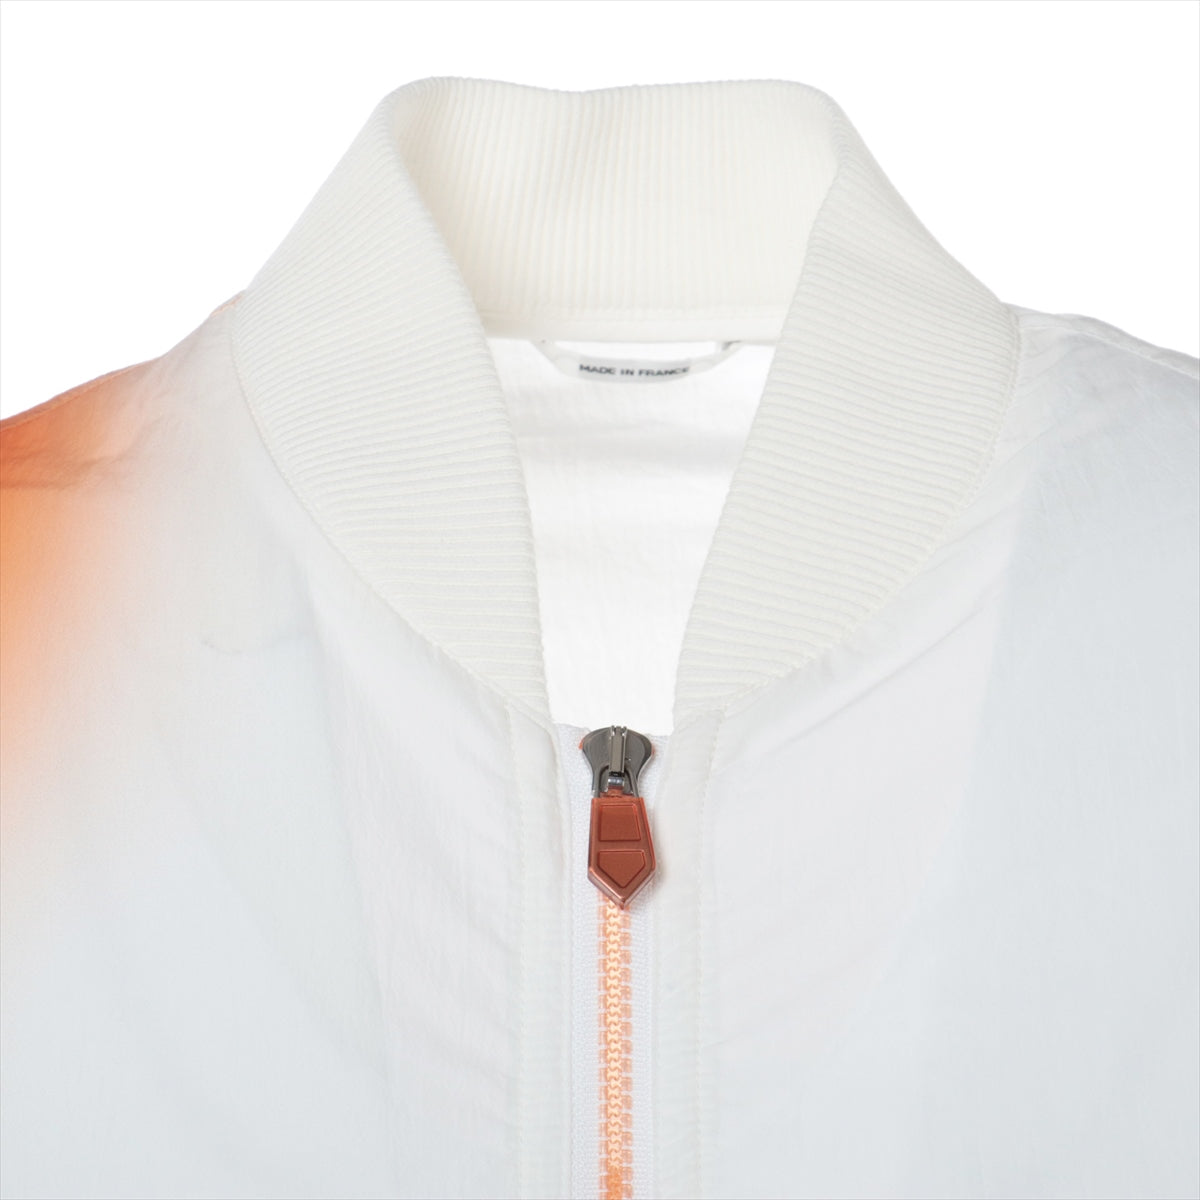 Hermès 23SS Cotton & nylon Blouson 50 Men's White x orange  Gradation